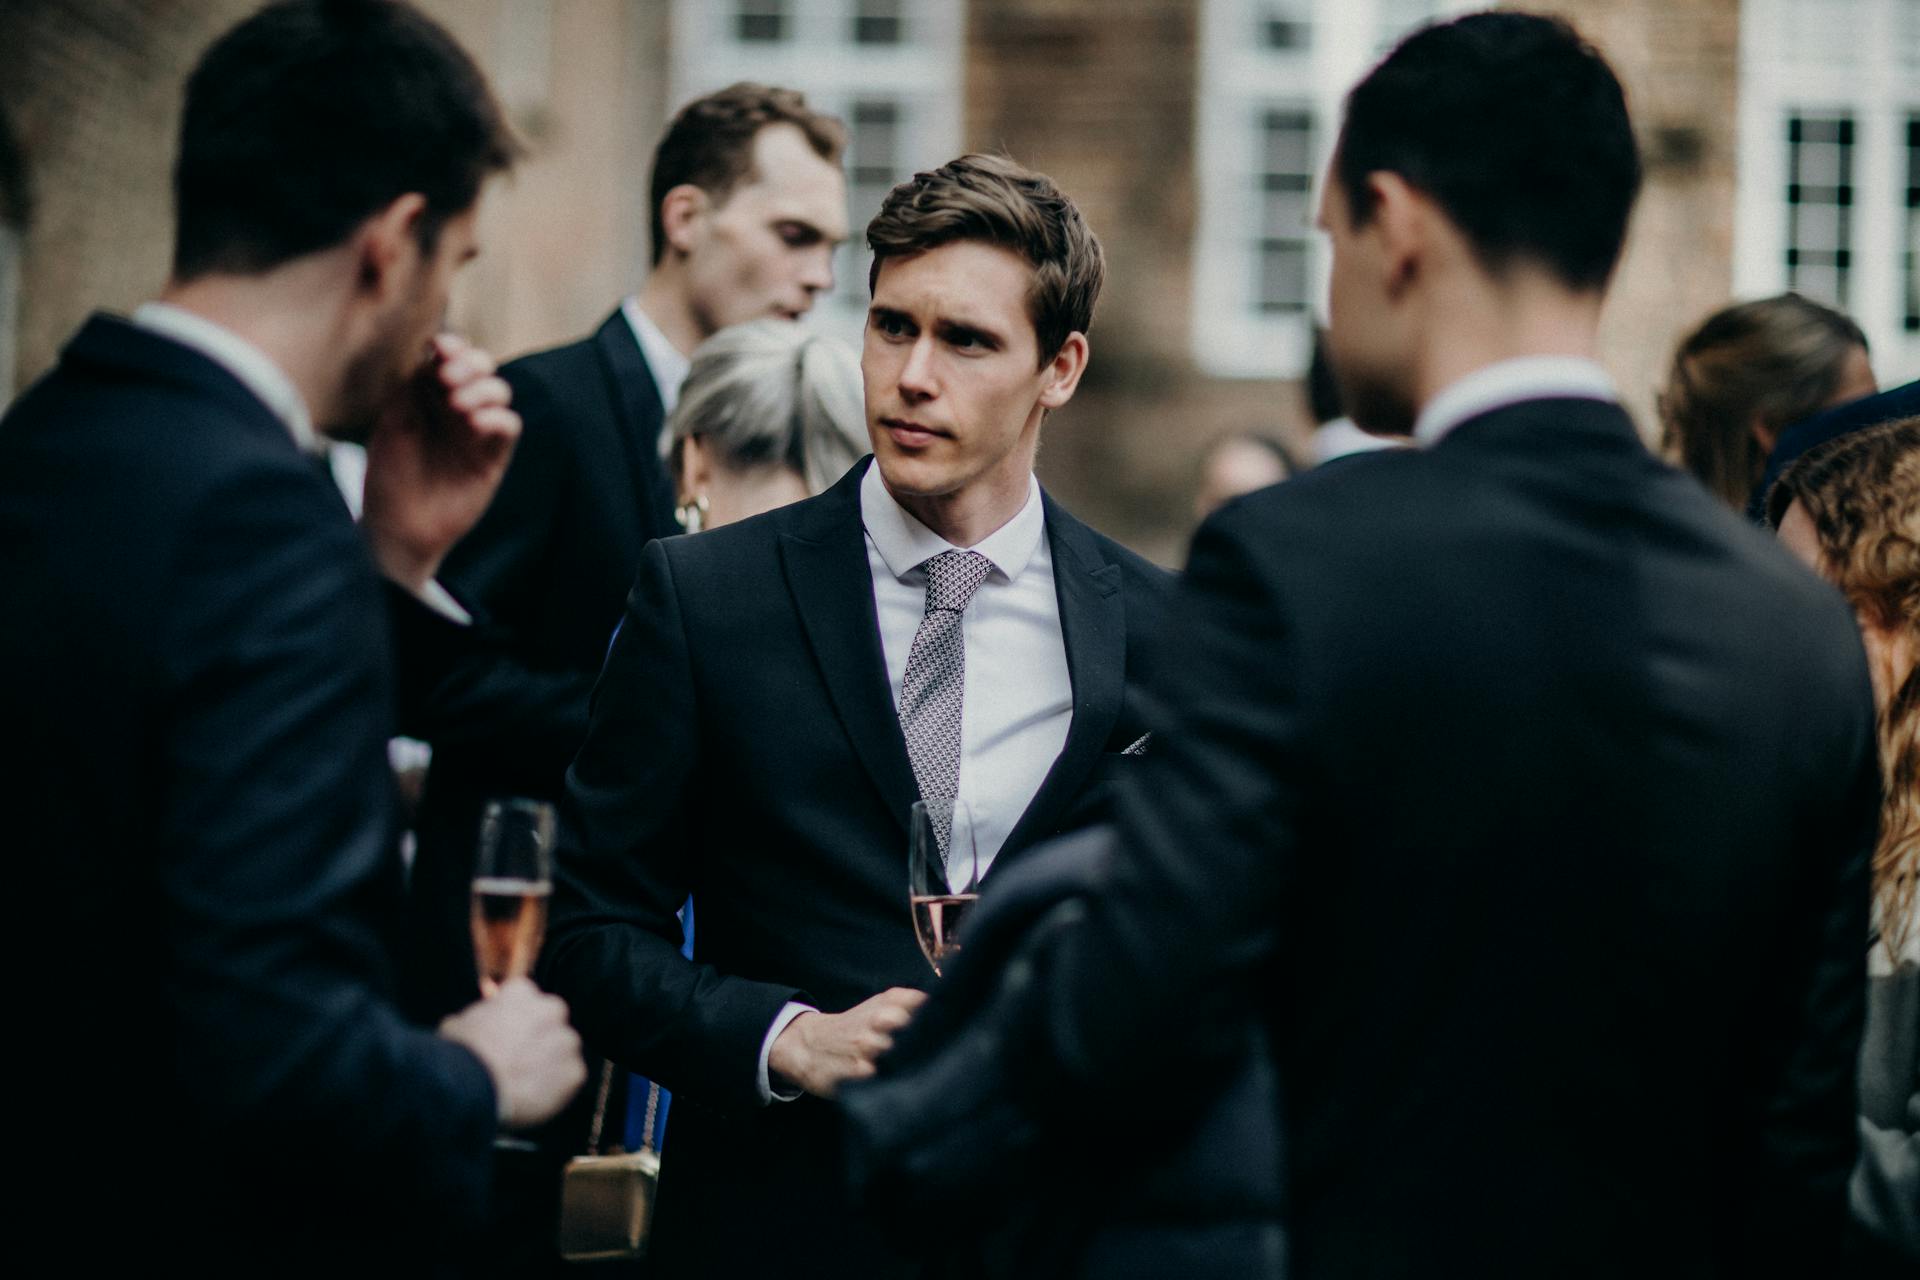 Des hommes en costume discutent lors d'une fête | Source : Pexels